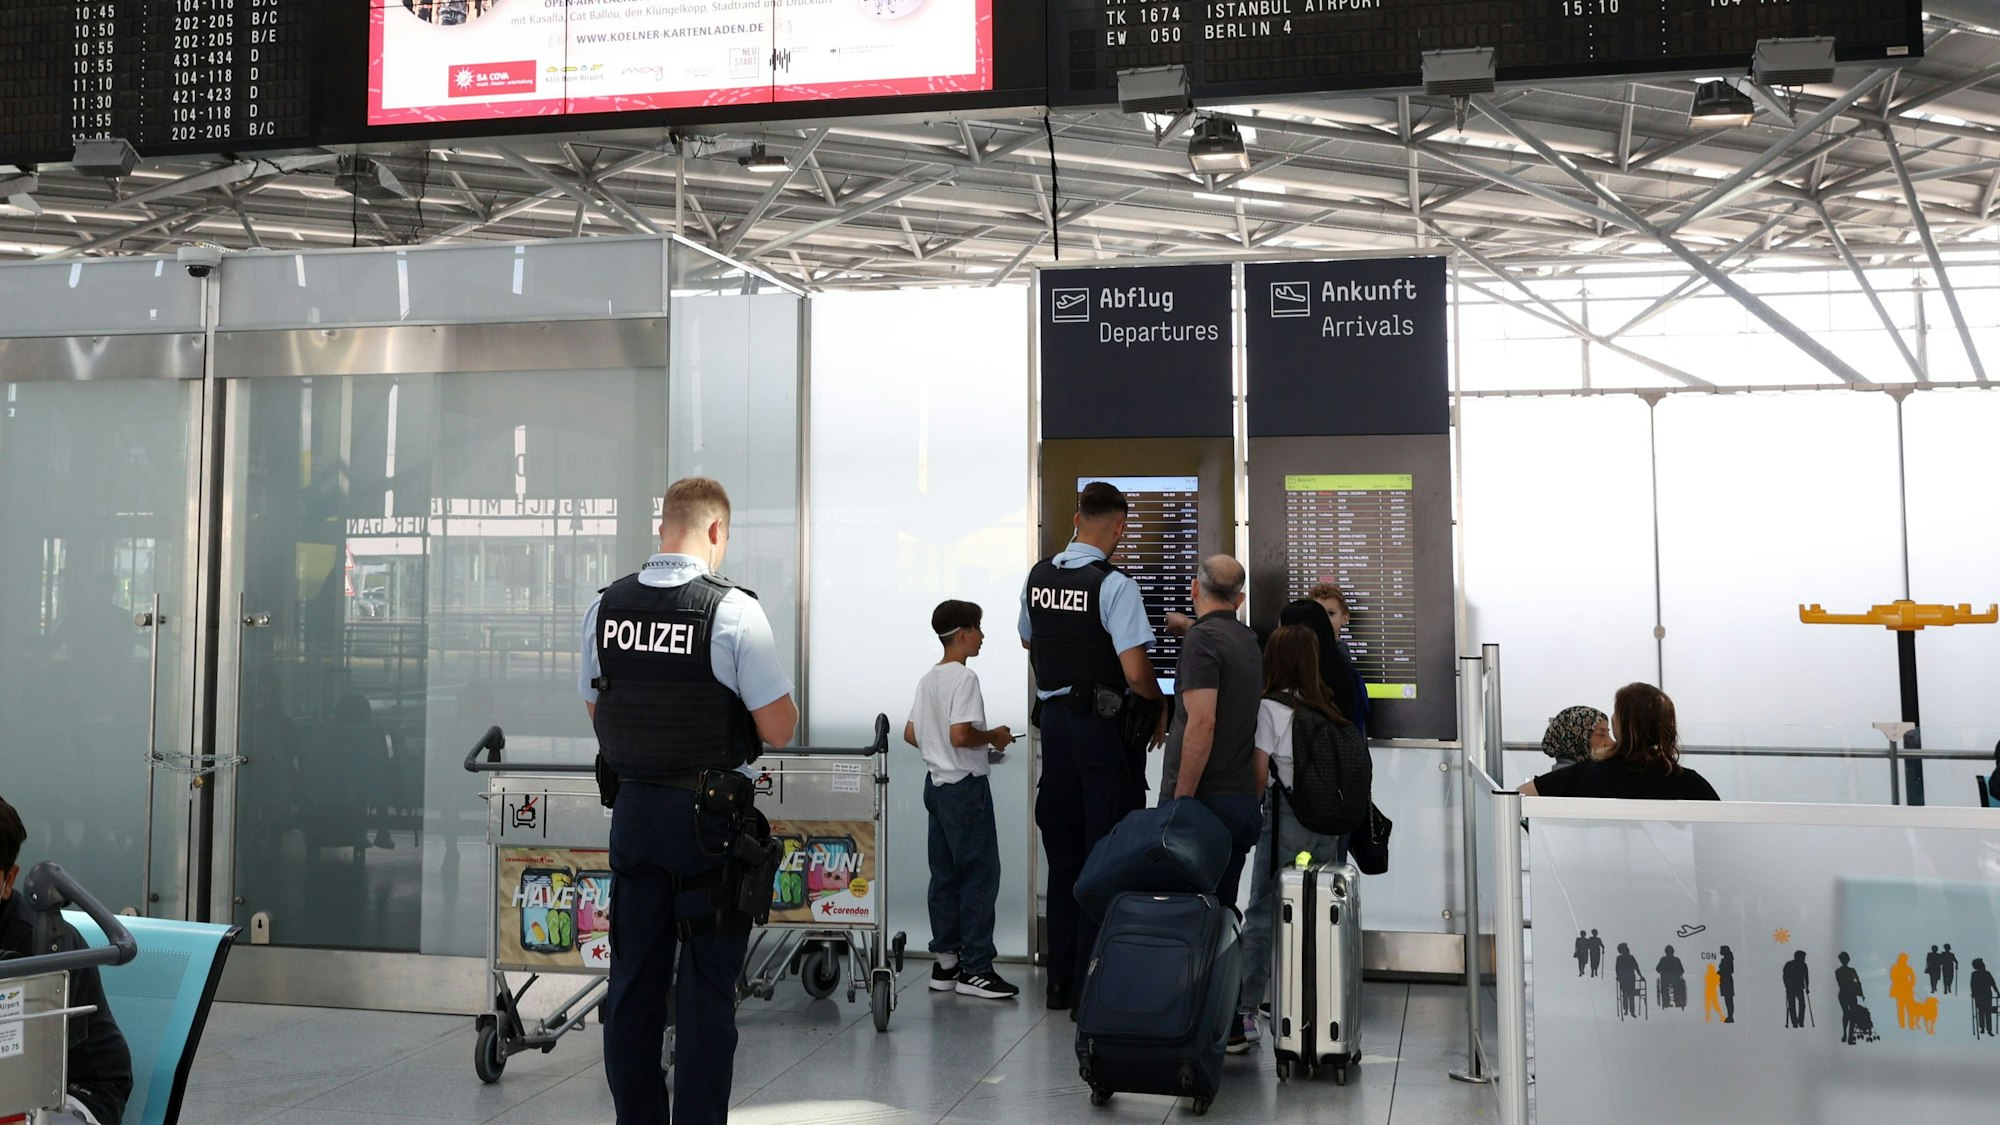 Lufthansa Streik am Flughafen Köln/Bonn. Reisende schauen auf eine An- und Abflugtafel.